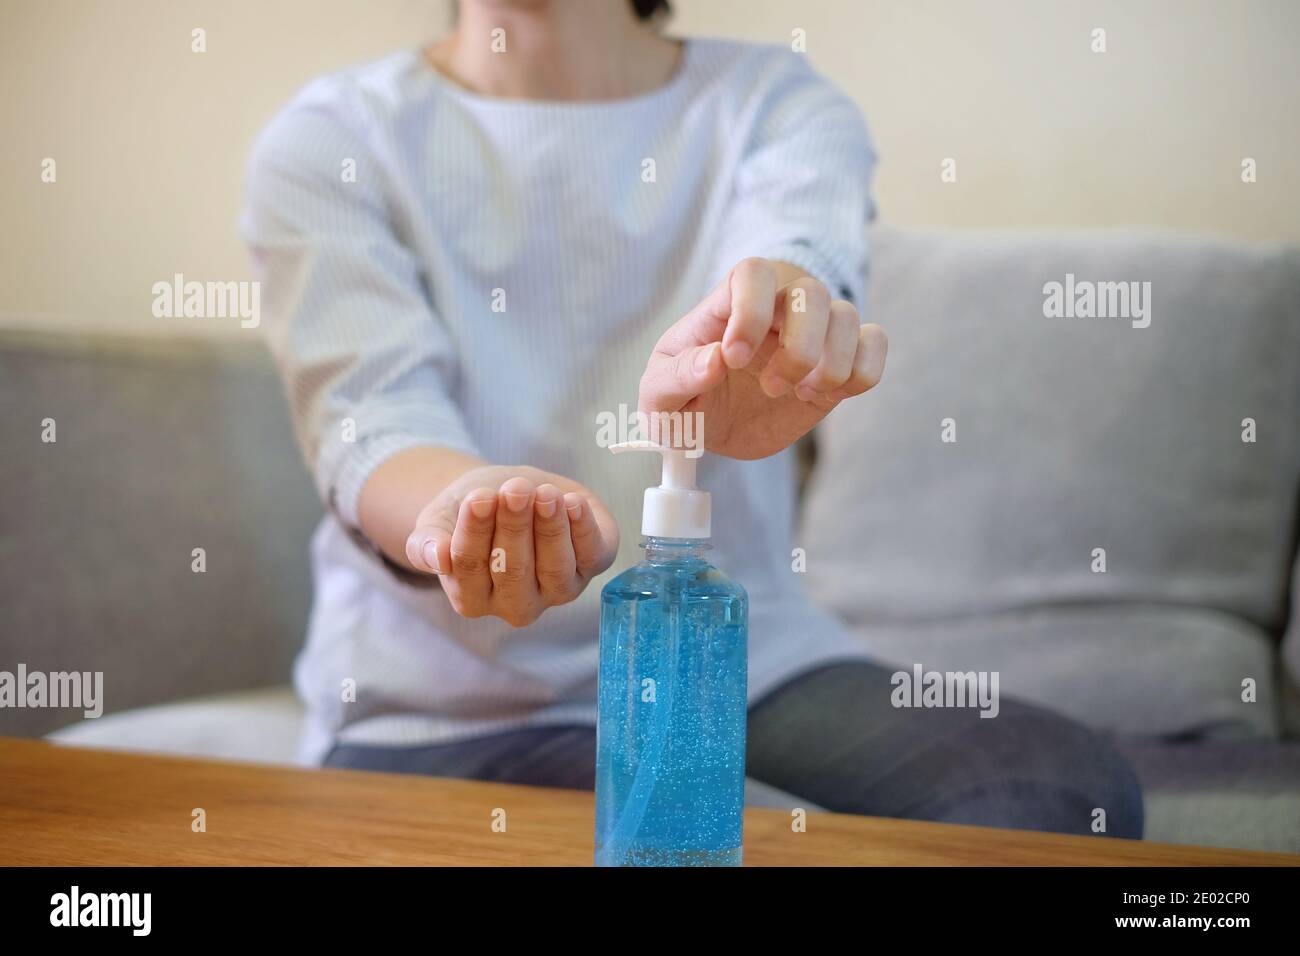 Une femme pressant une bouteille transparente de gel antibactérien bleu sur une table en bois pour nettoyer ses mains. Banque D'Images